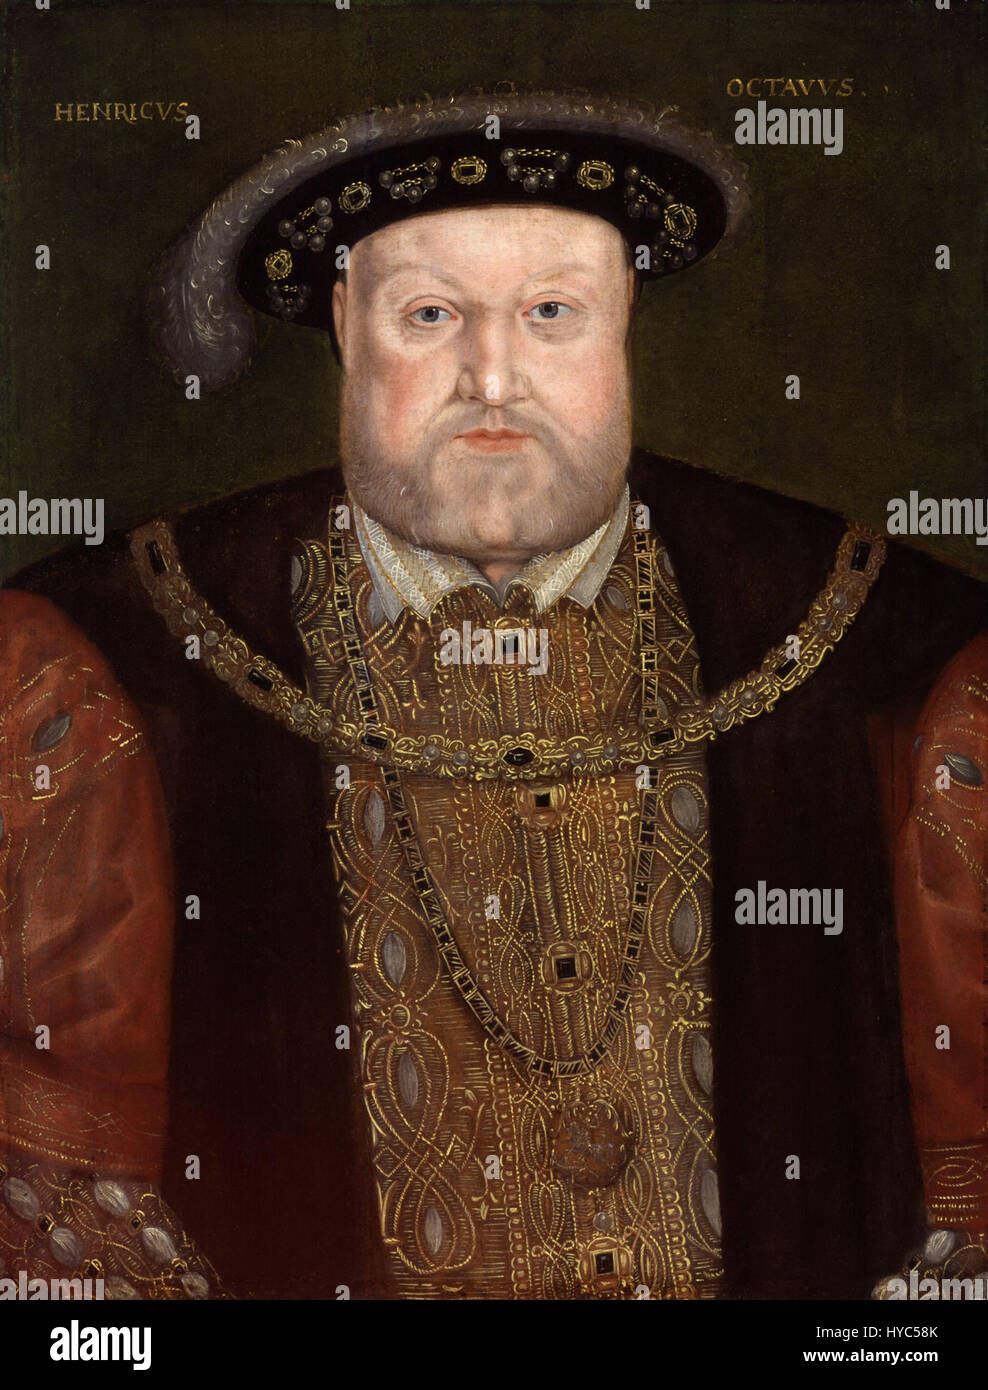 King Henry VIII from NPG (4) Stock Photo